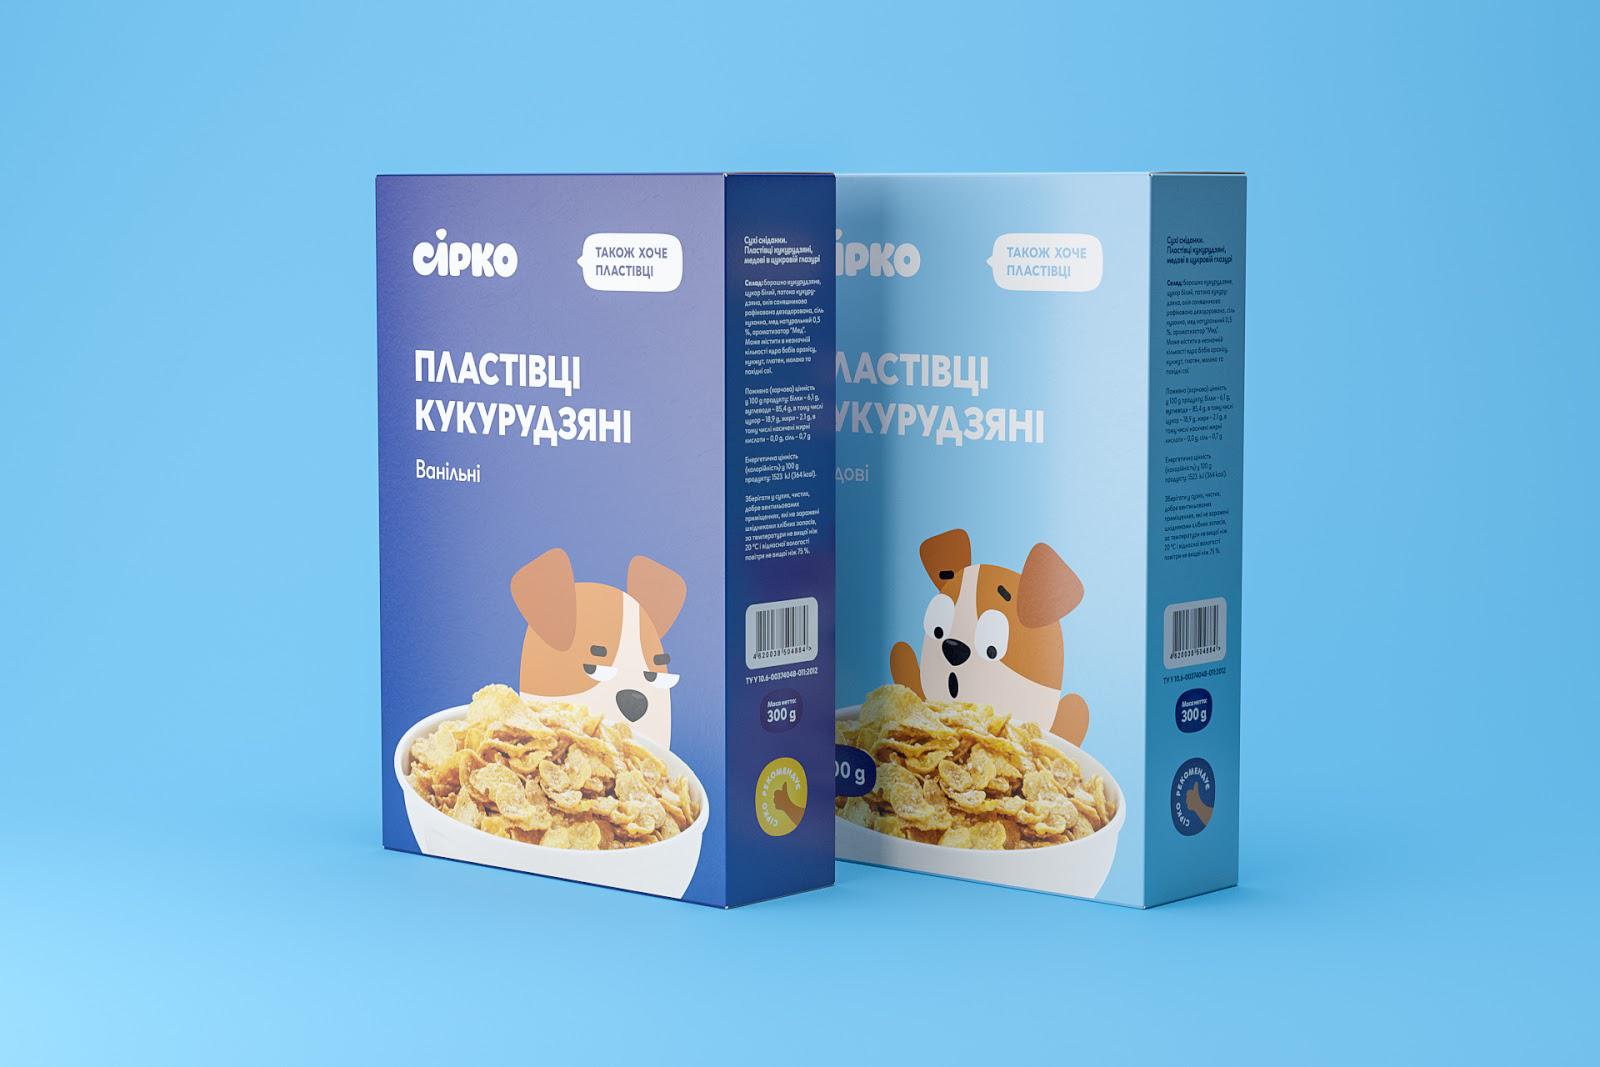 儿童食品包装设计 创意儿童食品包装设计 儿童食品包装设计公司哪家好 儿童食品包装设计公司 第6张